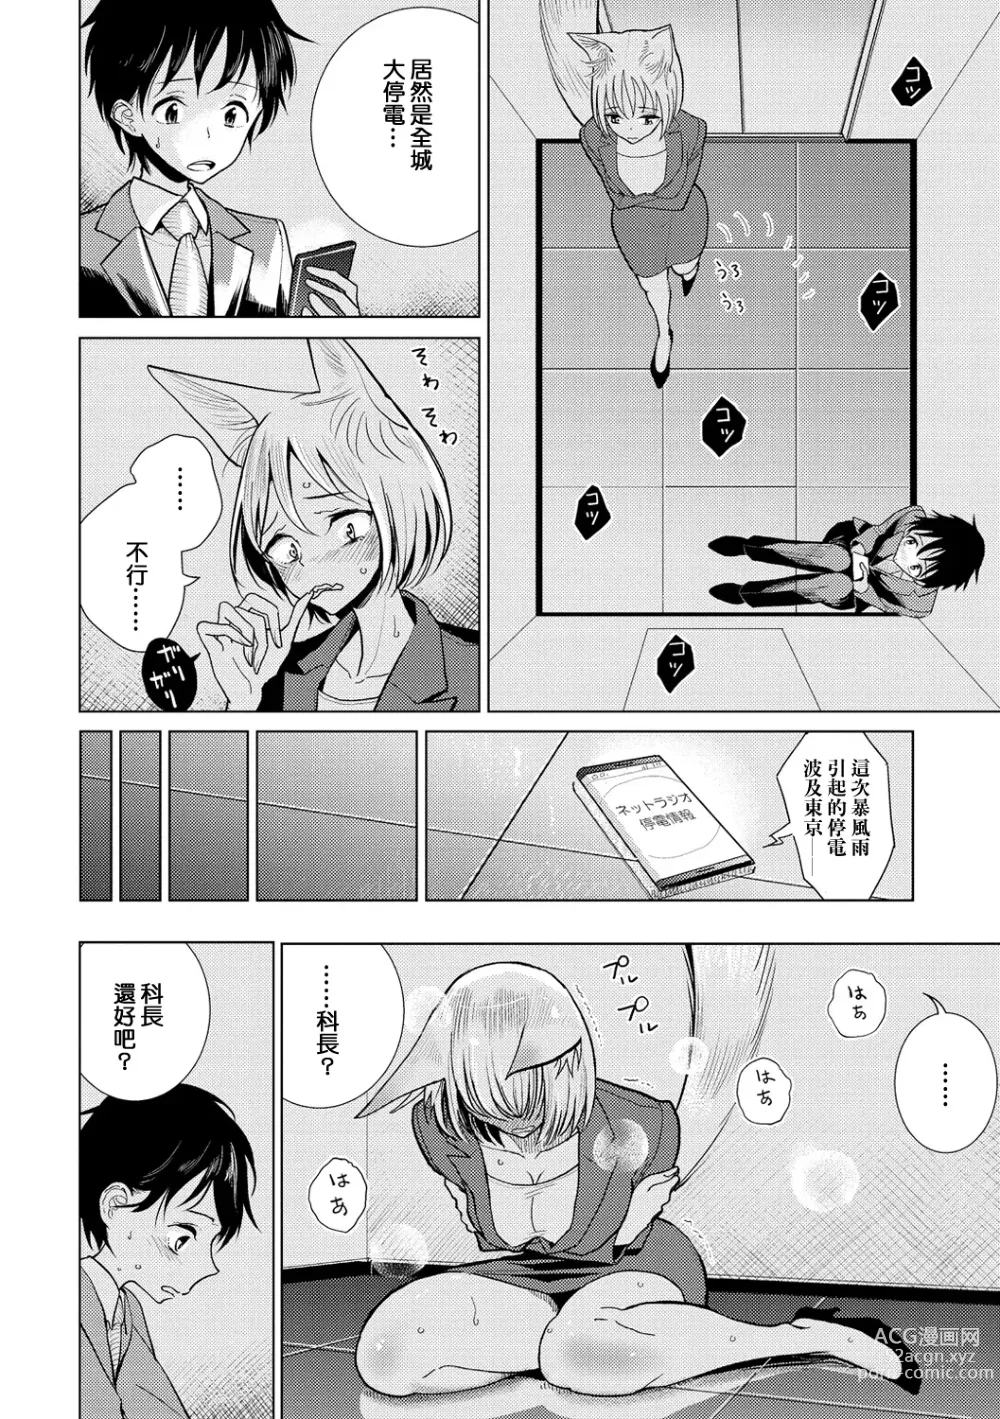 Page 5 of manga Boku no Joushi wa